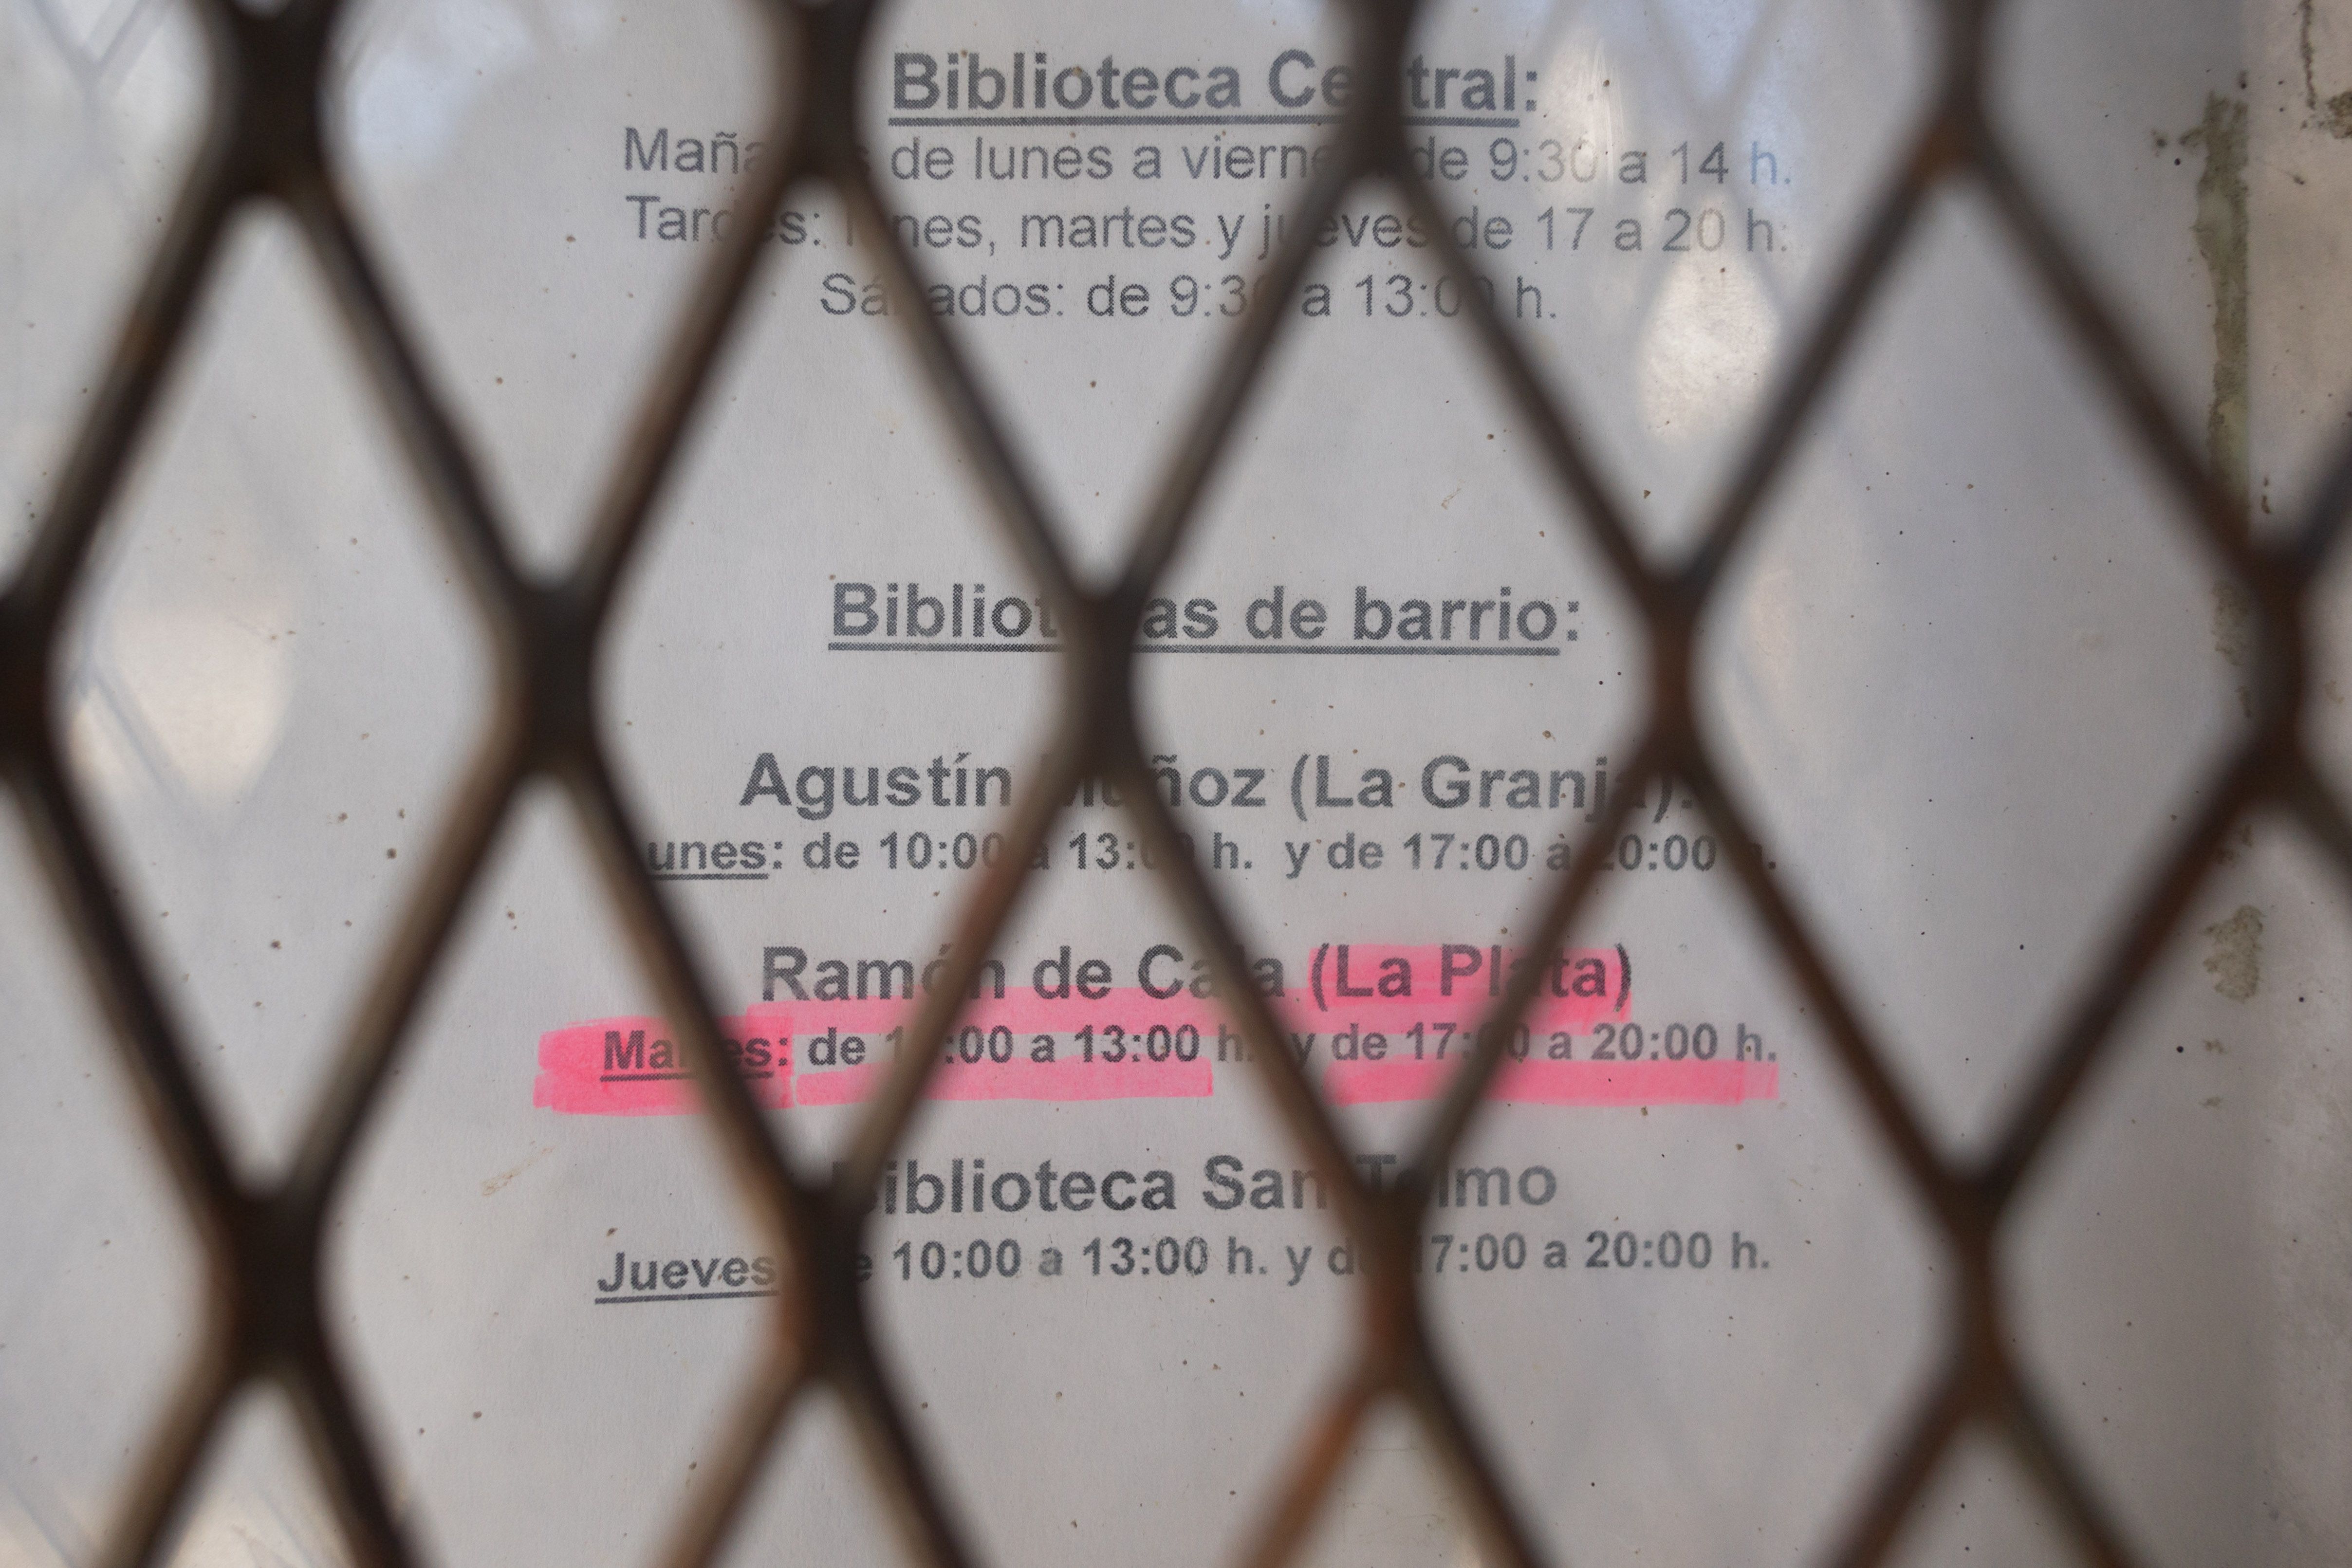 Los cierres de bibliotecas de Jerez llegan al pleno: "Me dijeron que no enchufara el portátil para ahorrar luz". Horarios en la biblioteca de La Plata, este pasasdo viernes.